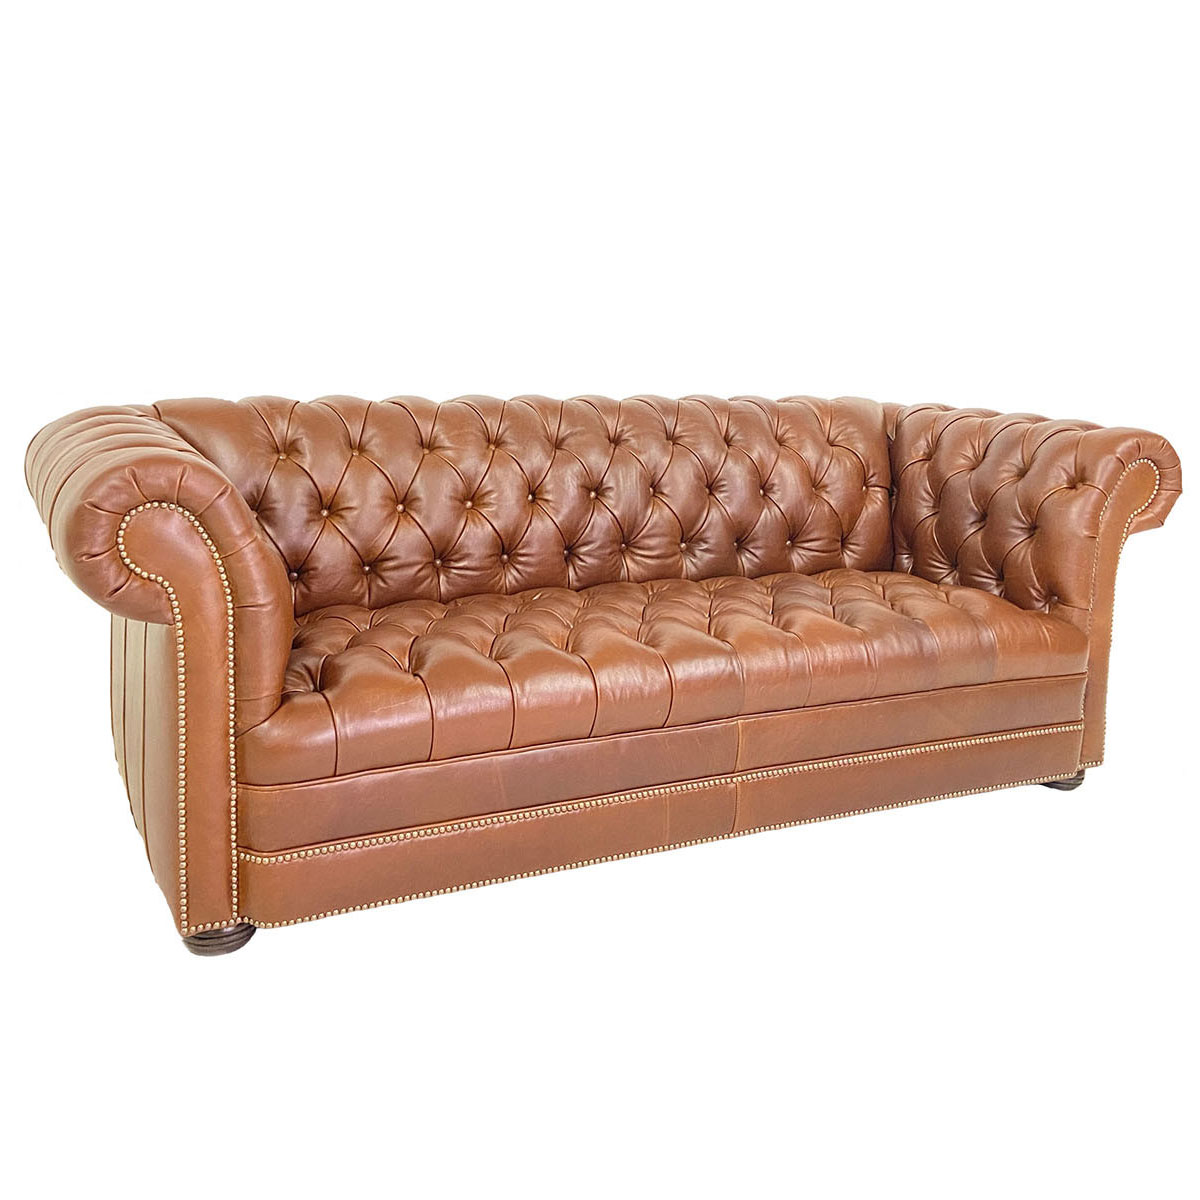 600 Club Sofa by CC Leather